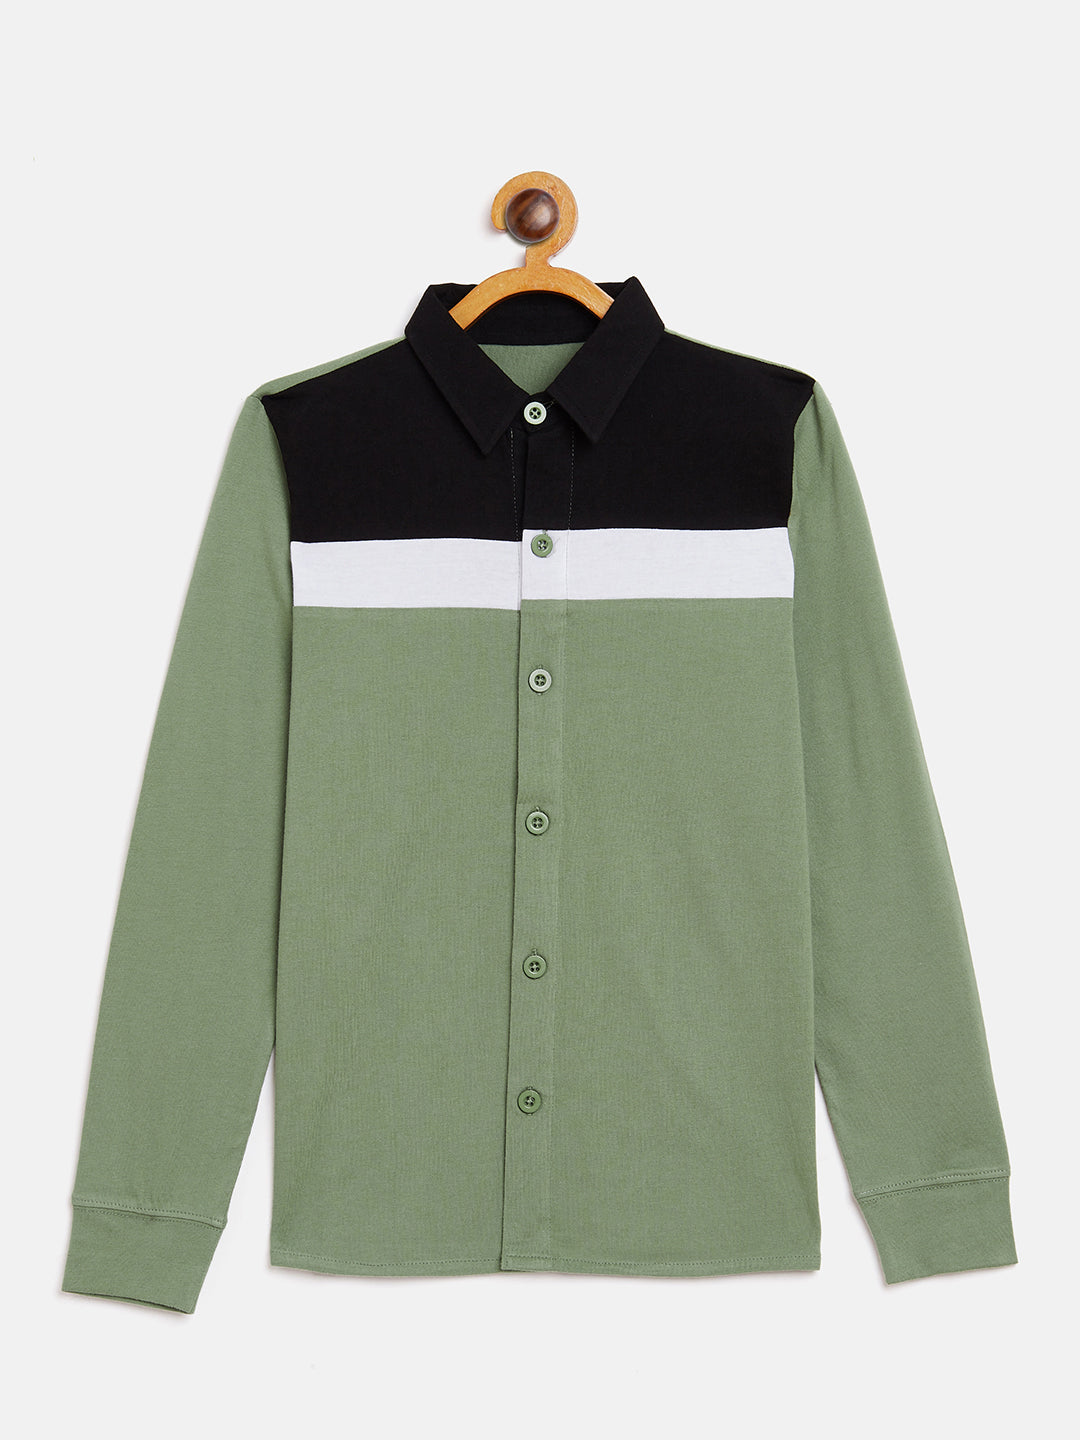 Moss Green/Black/White Kids Full Sleeves Color Block Shirt